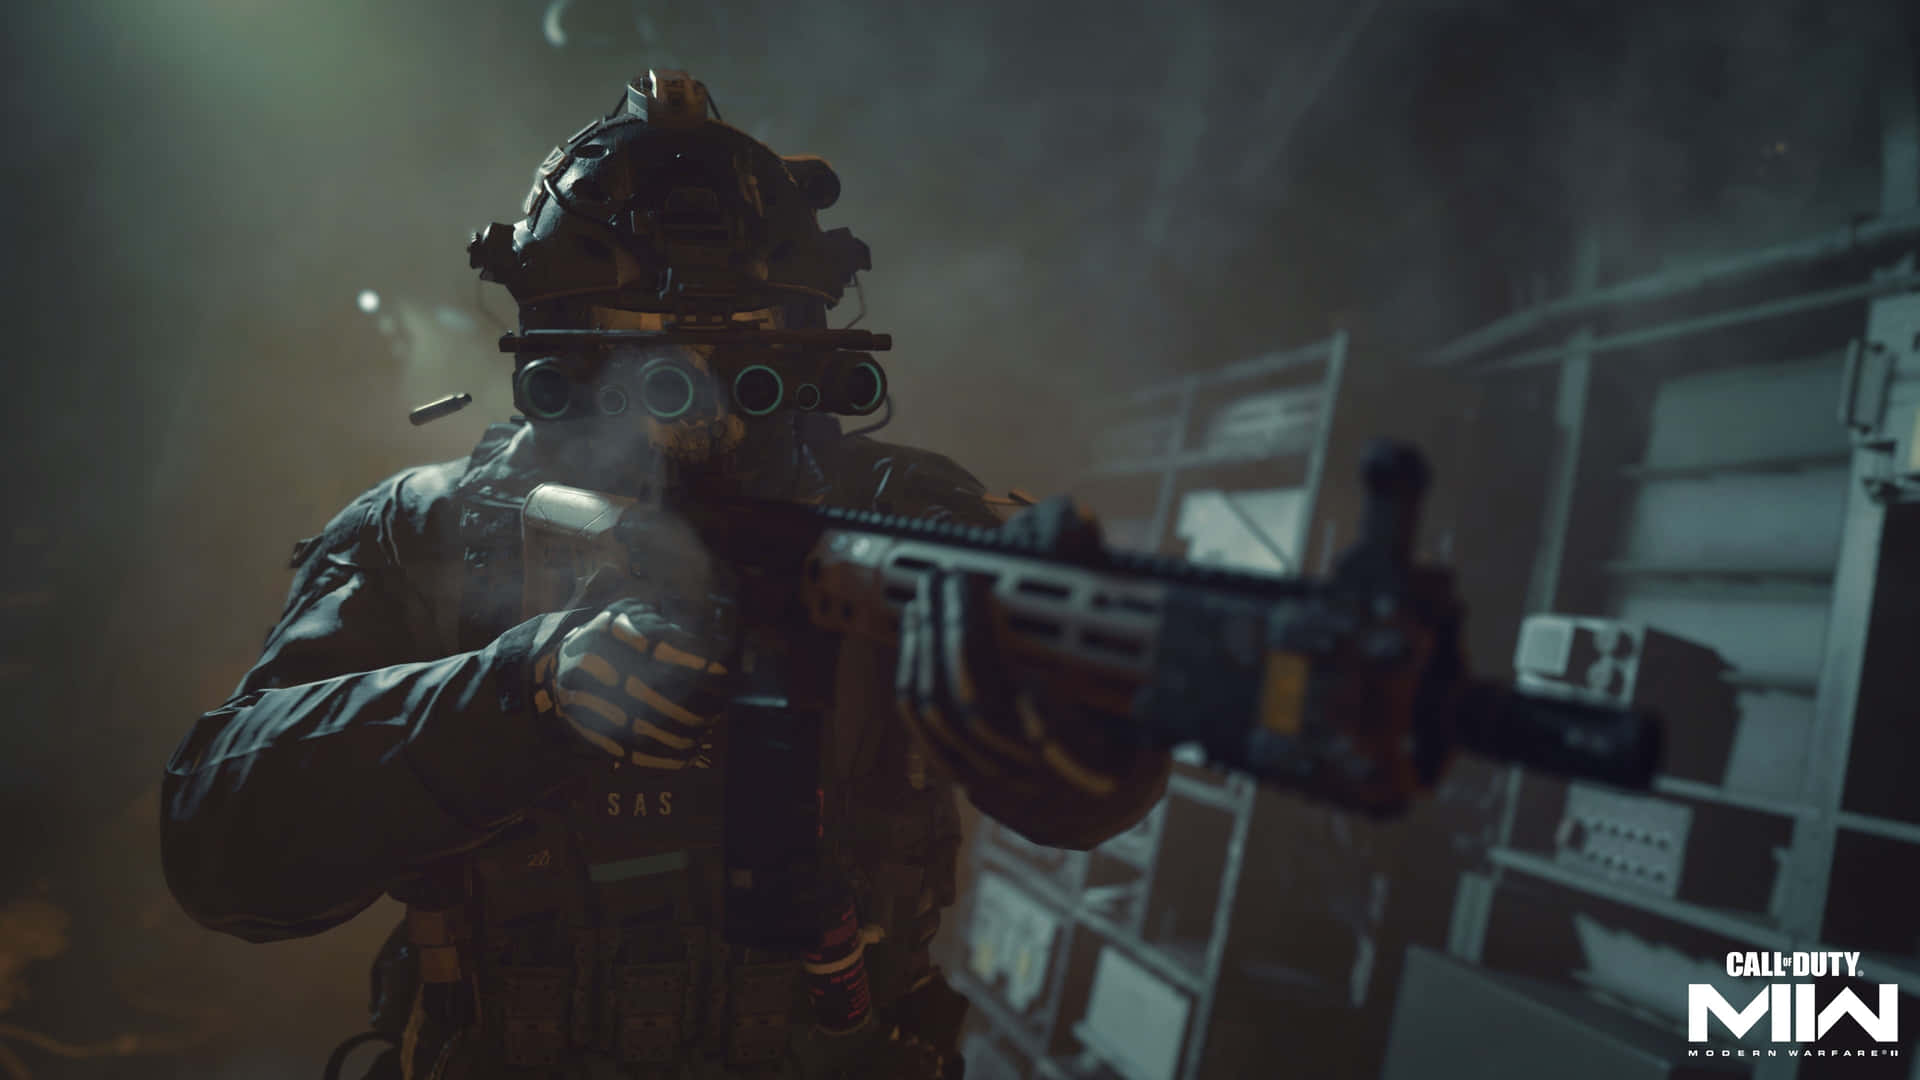 Fondode Pantalla De Call Of Duty Modern Warfare En 4k, Hombre Disparando Una Escopeta.